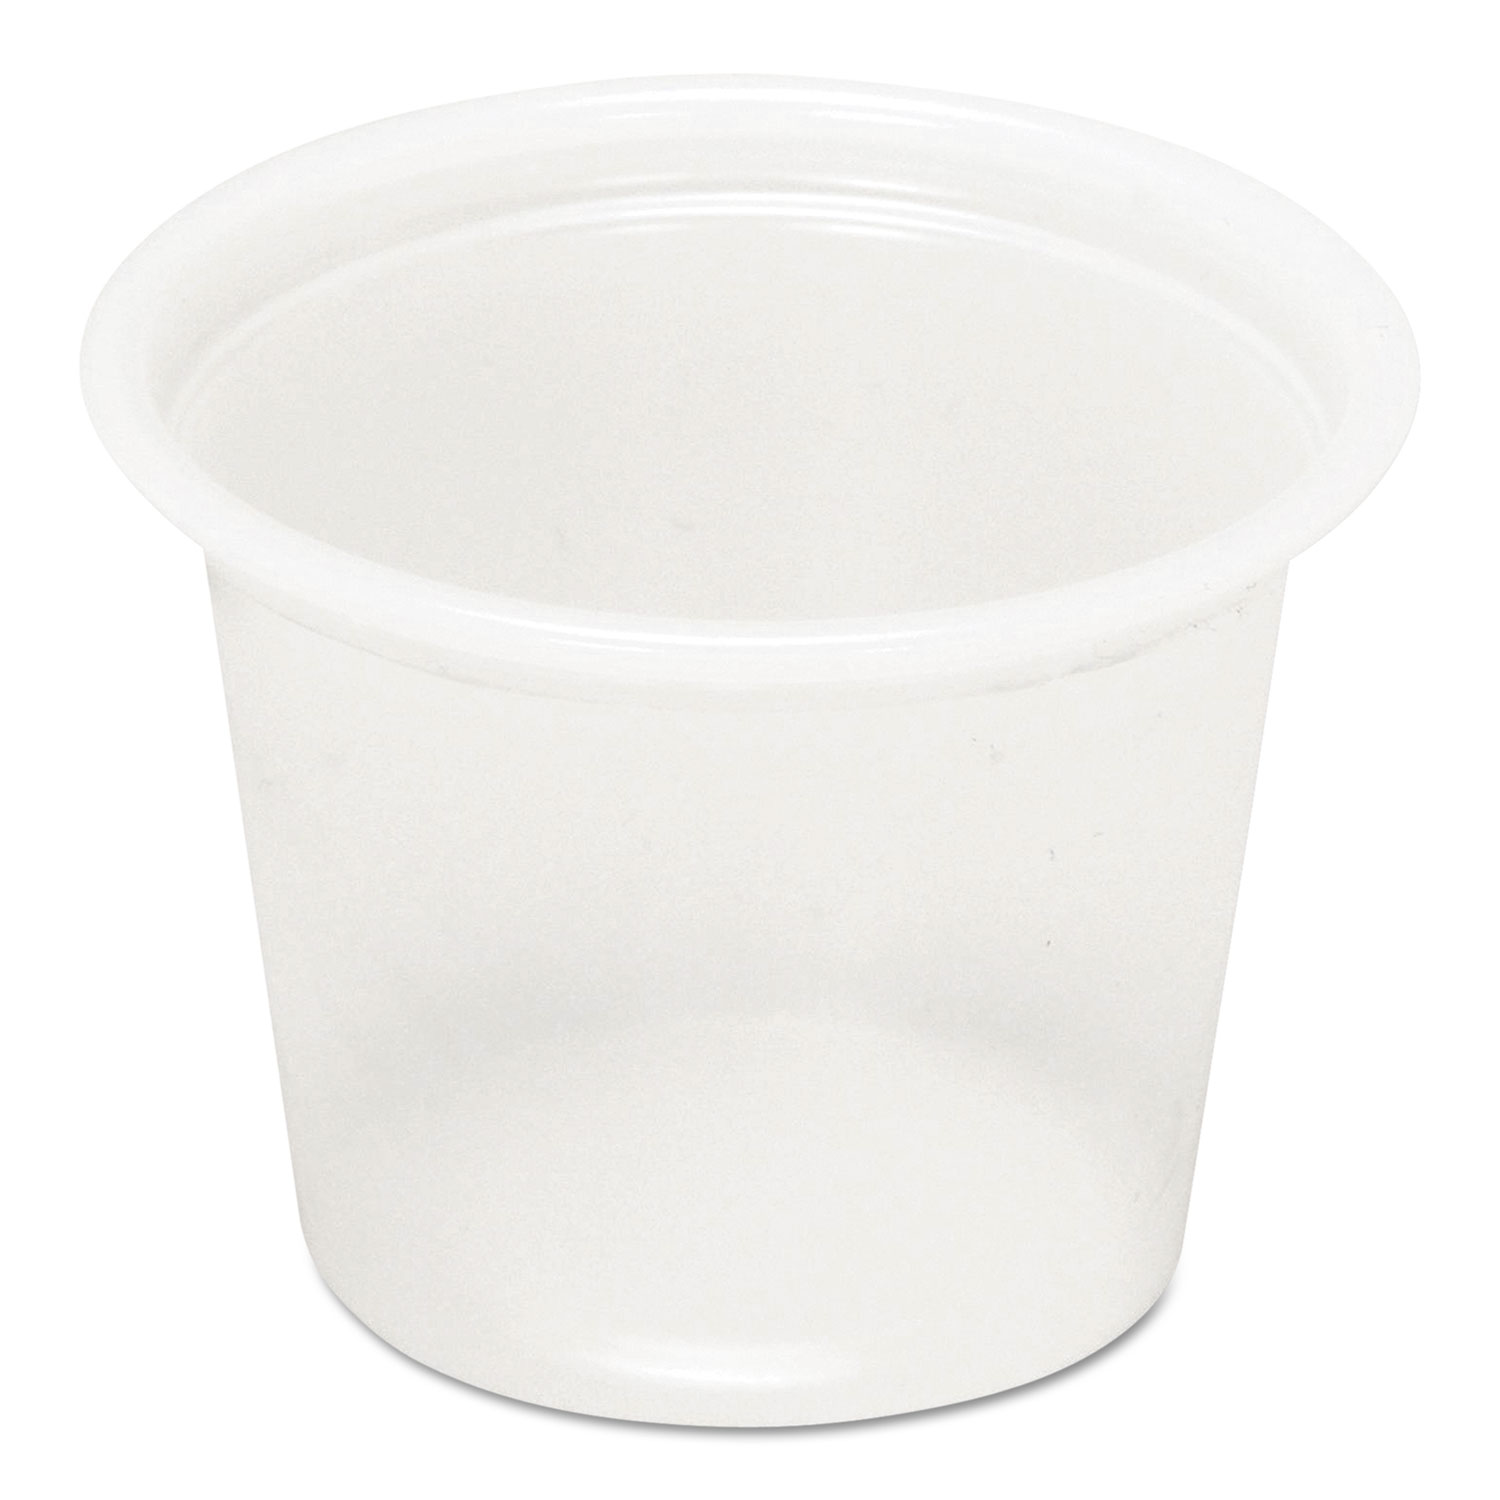  Pactiv YS100 Plastic Soufflé Cups, 1 oz, Translucent, 5000/Carton (PCTYS100) 